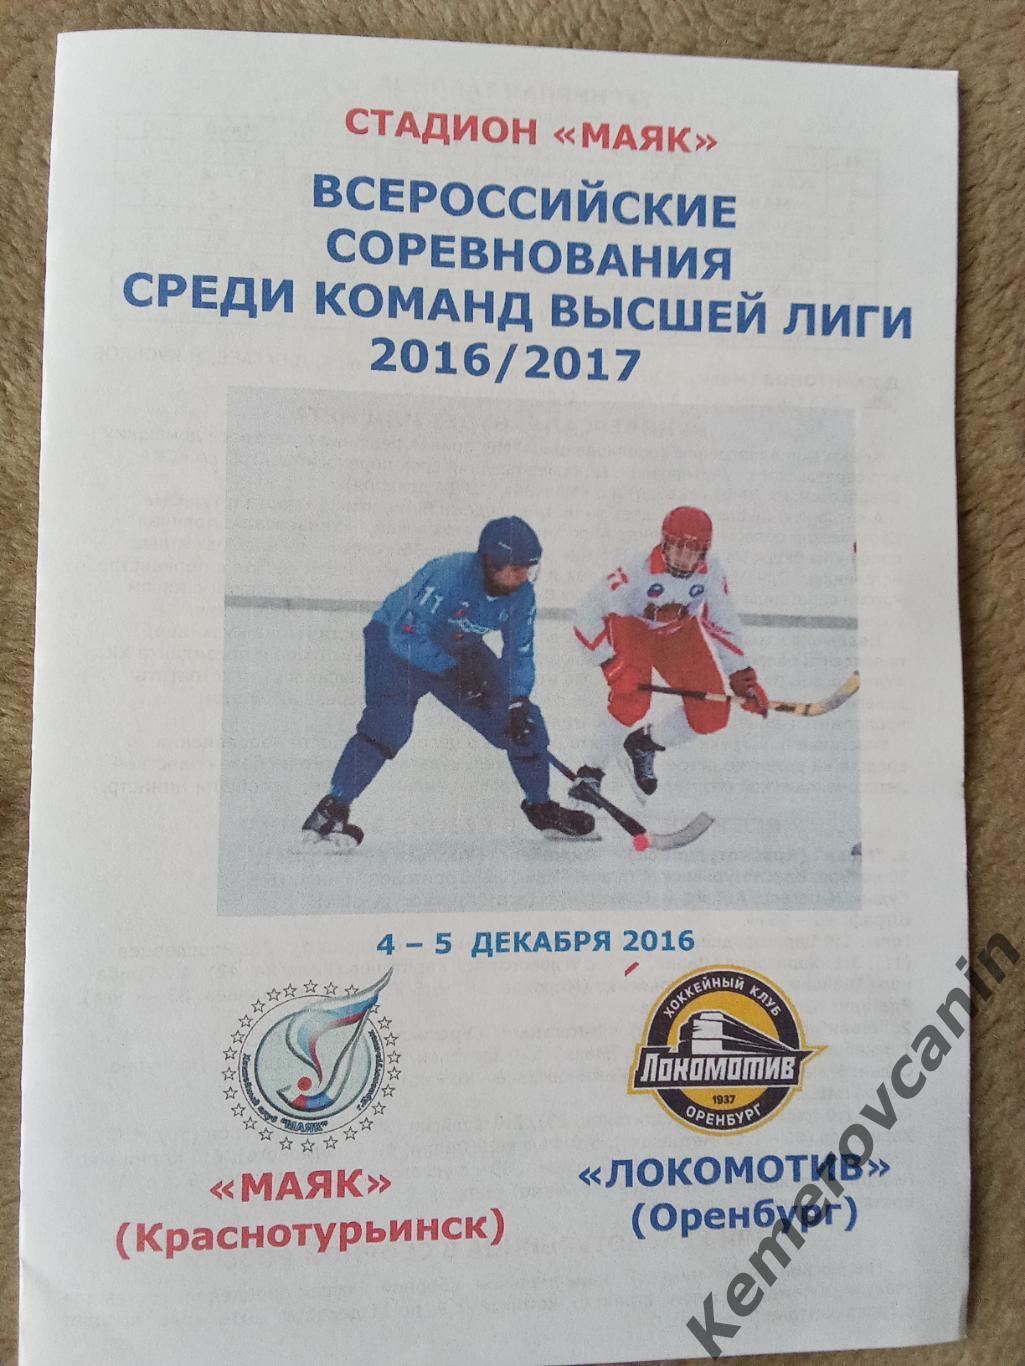 Маяк Краснотурьинск - Локомотив Оренбург 4-5.12.2016 высшая лига 2016/2017